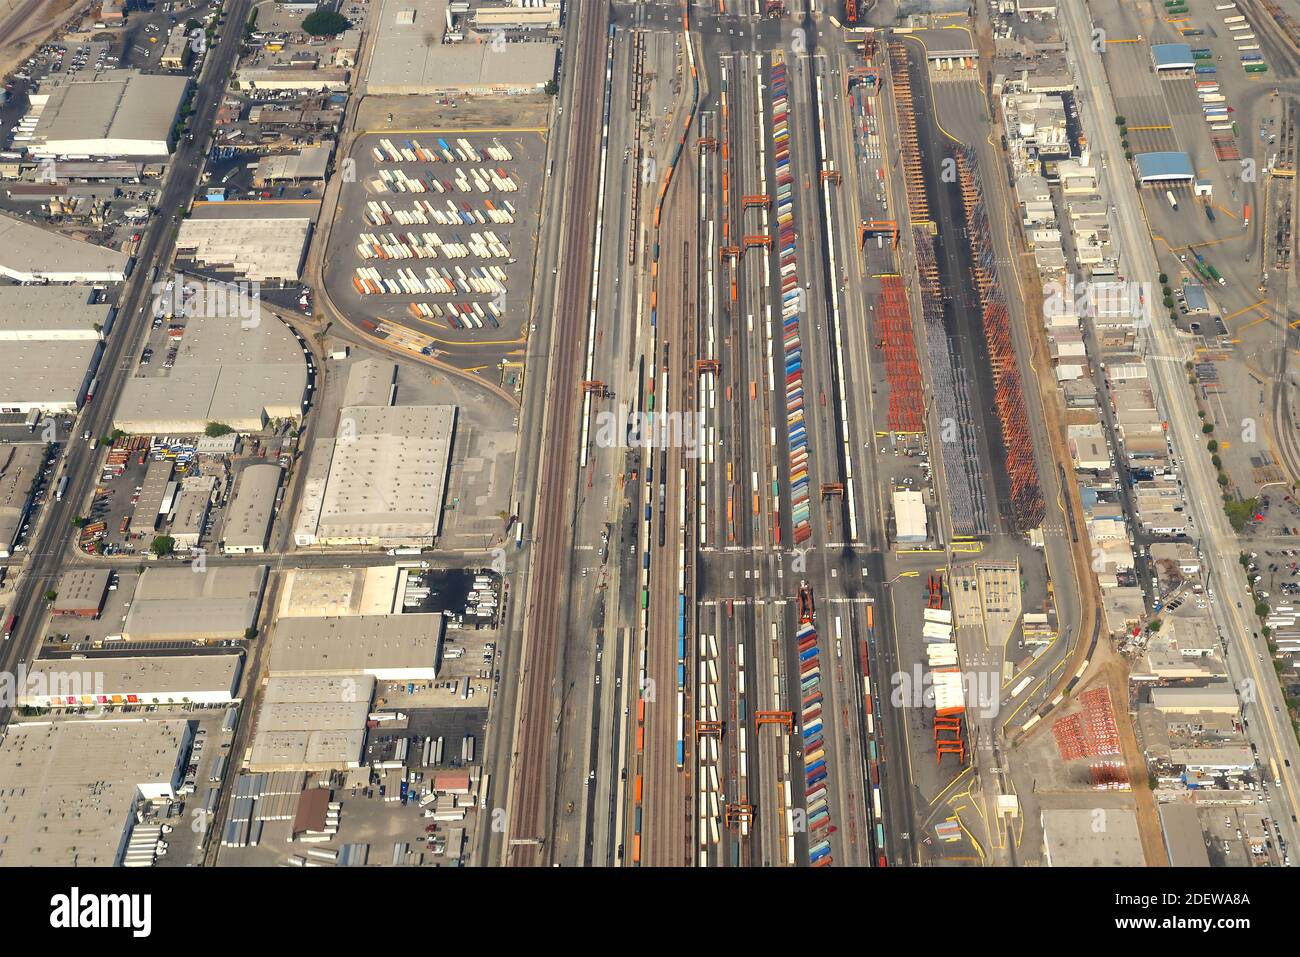 BNSF Railway Company intermodale Frachtoperationen in Los Angeles, USA. Luftaufnahme der Gütertransportanlage mit mehreren Containern. Stockfoto